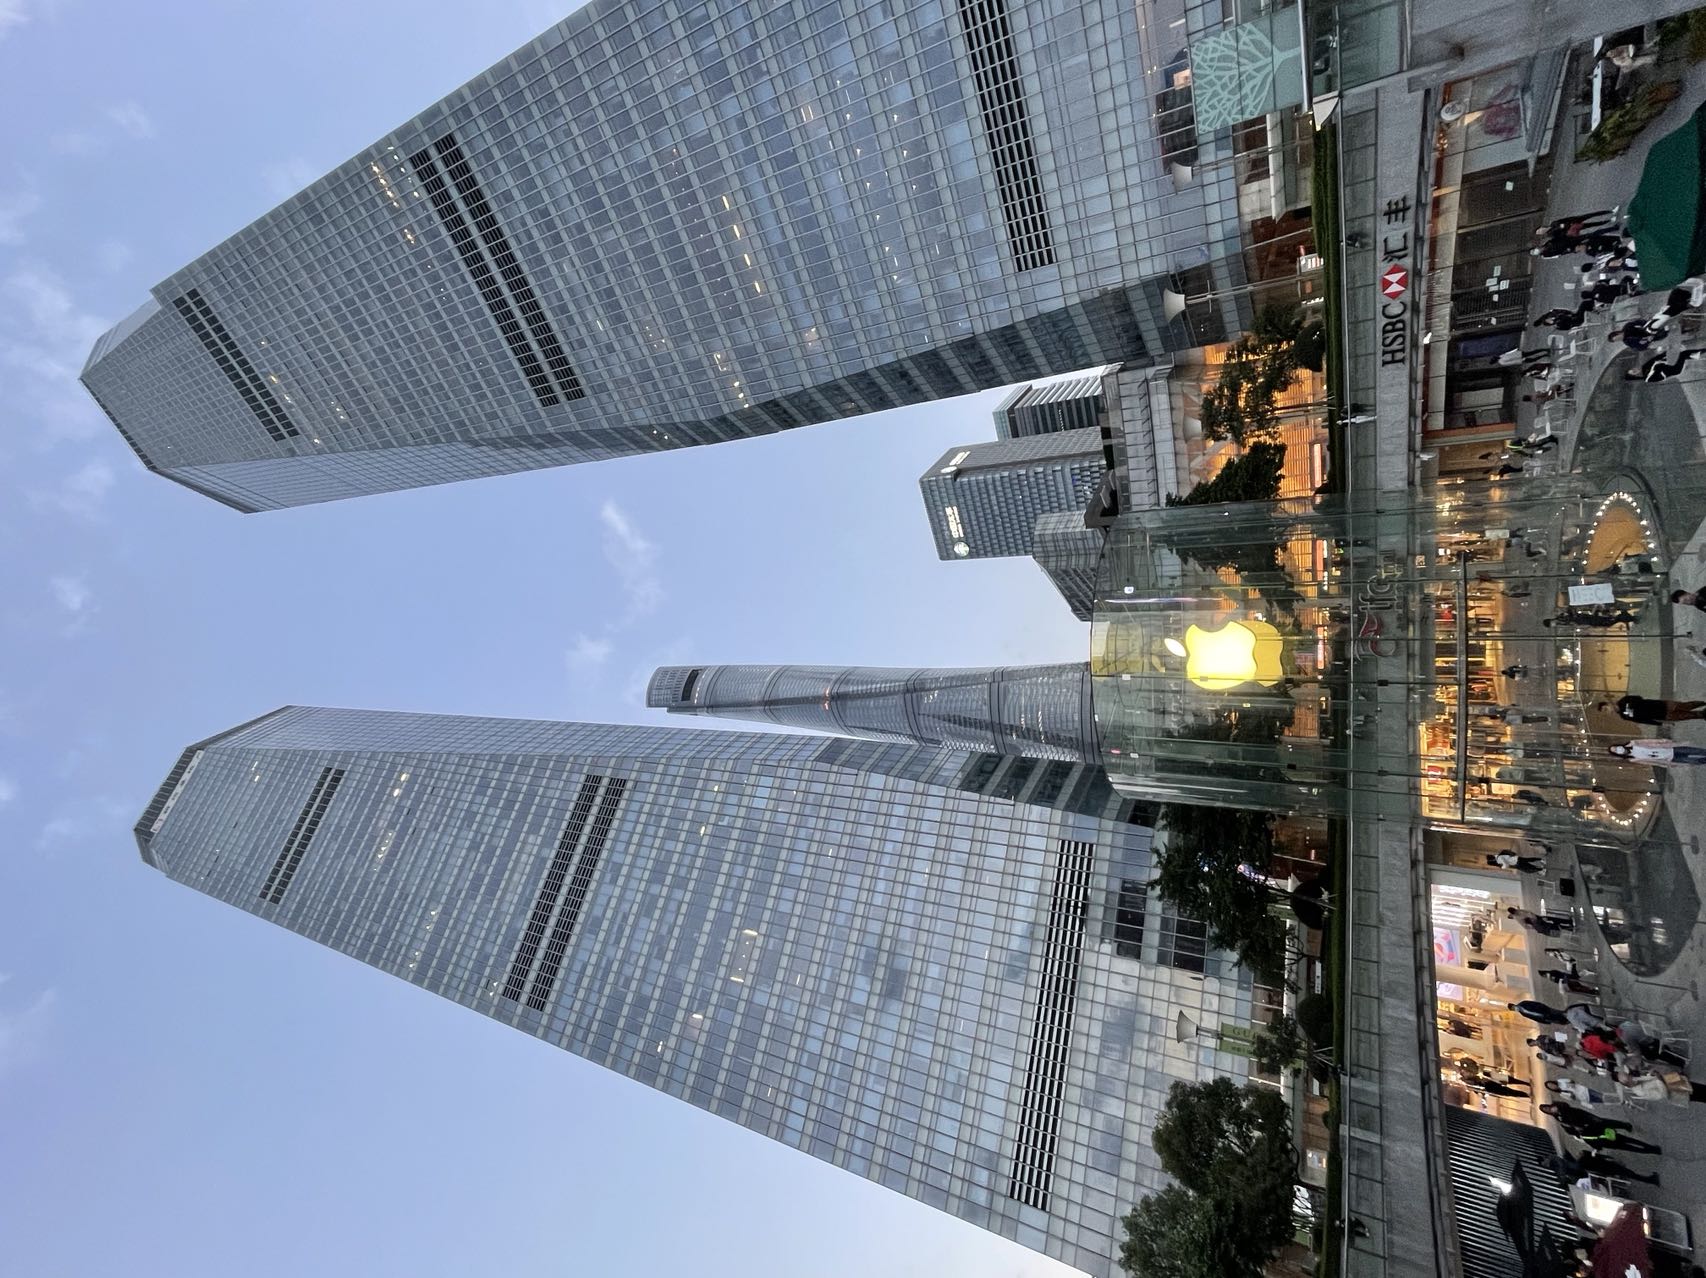 上海国金中心图片